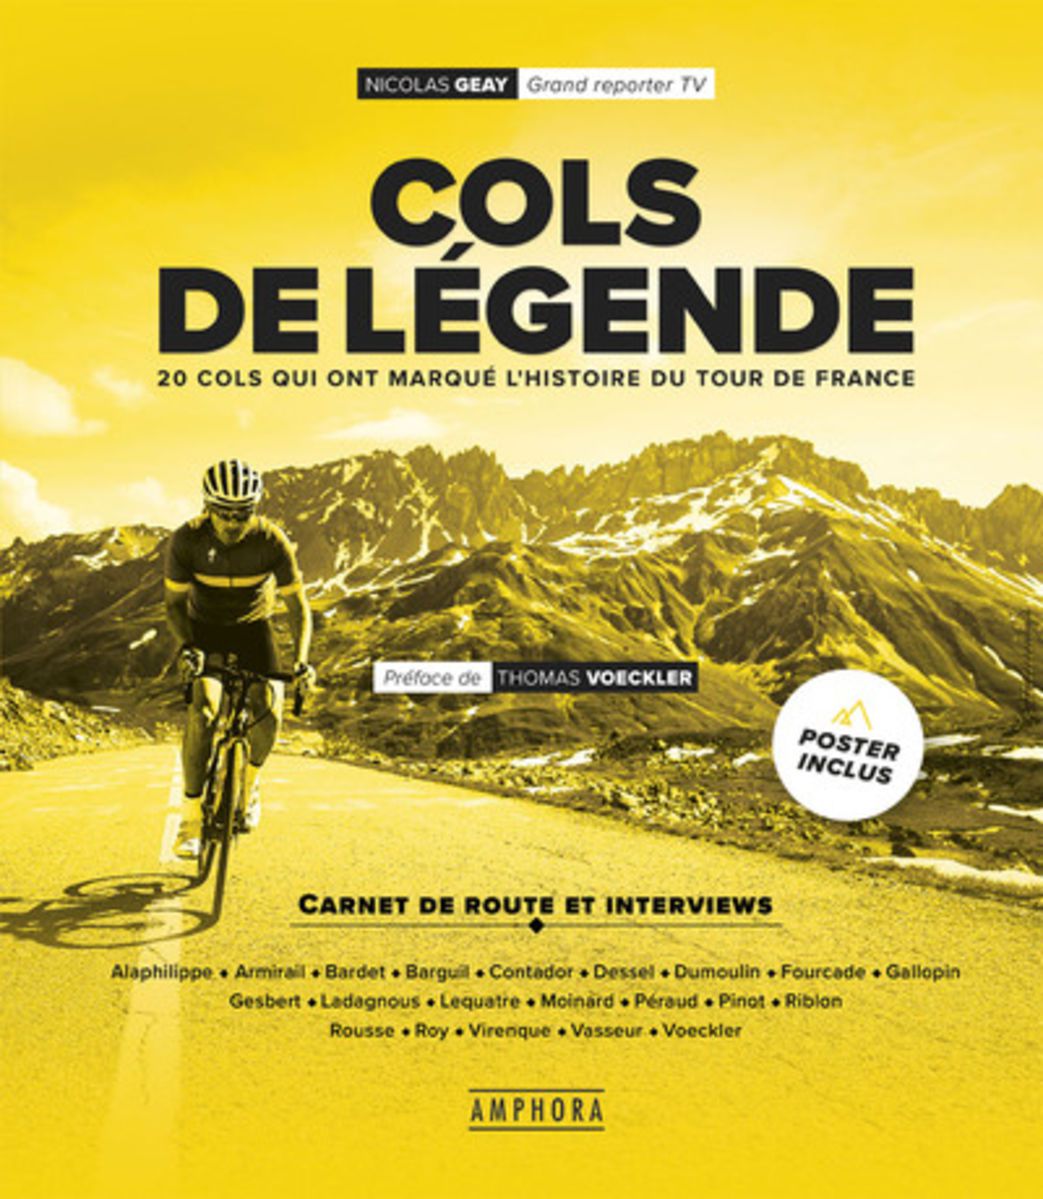 COLS DE LEGENDE + POSTER (NOUVELLE EDITION) Cols de legende + poster (nouvelle edition)